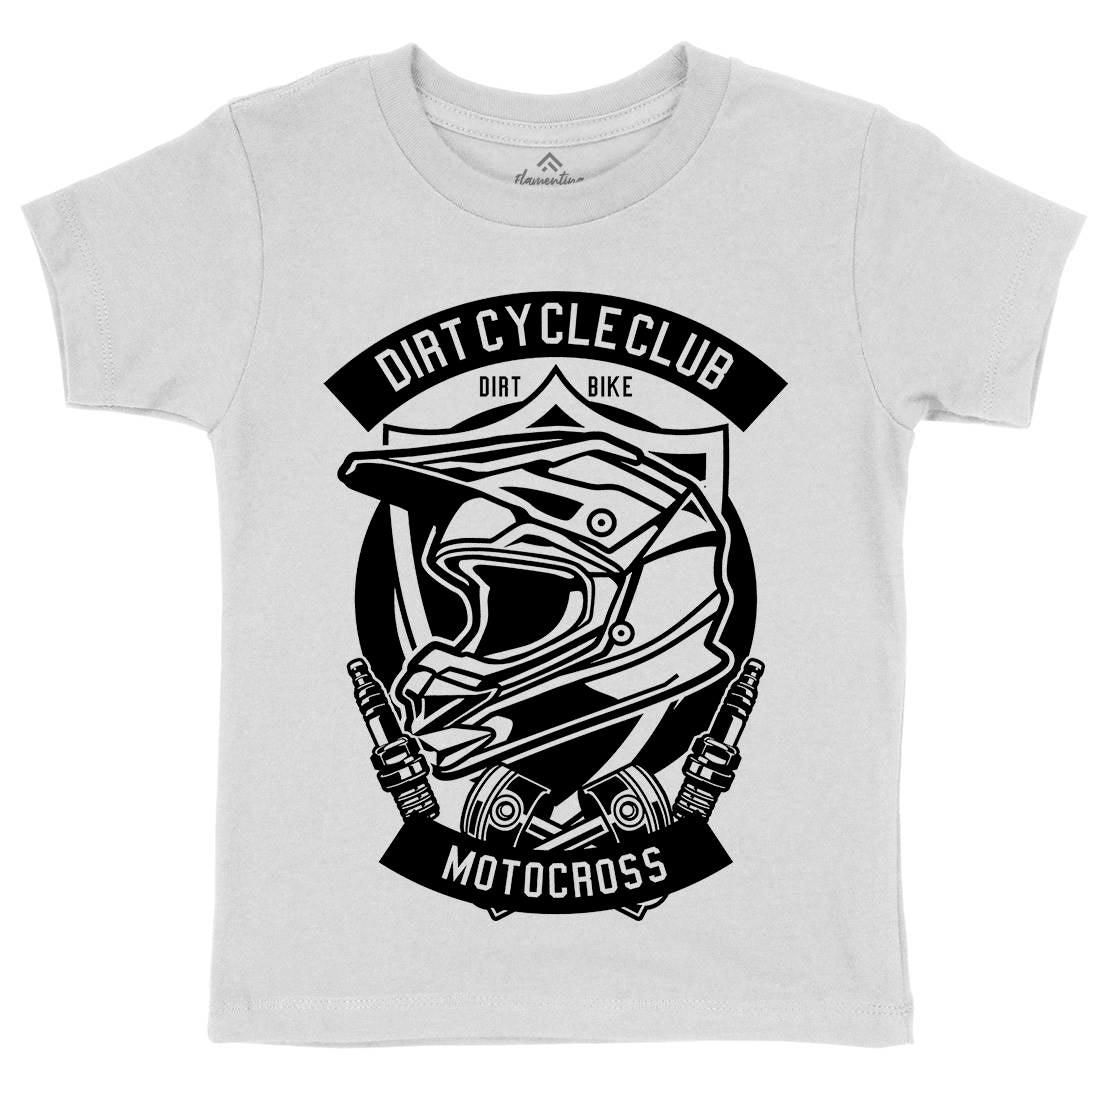 Dirty Cycle Club Kids Organic Crew Neck T-Shirt Motorcycles B532